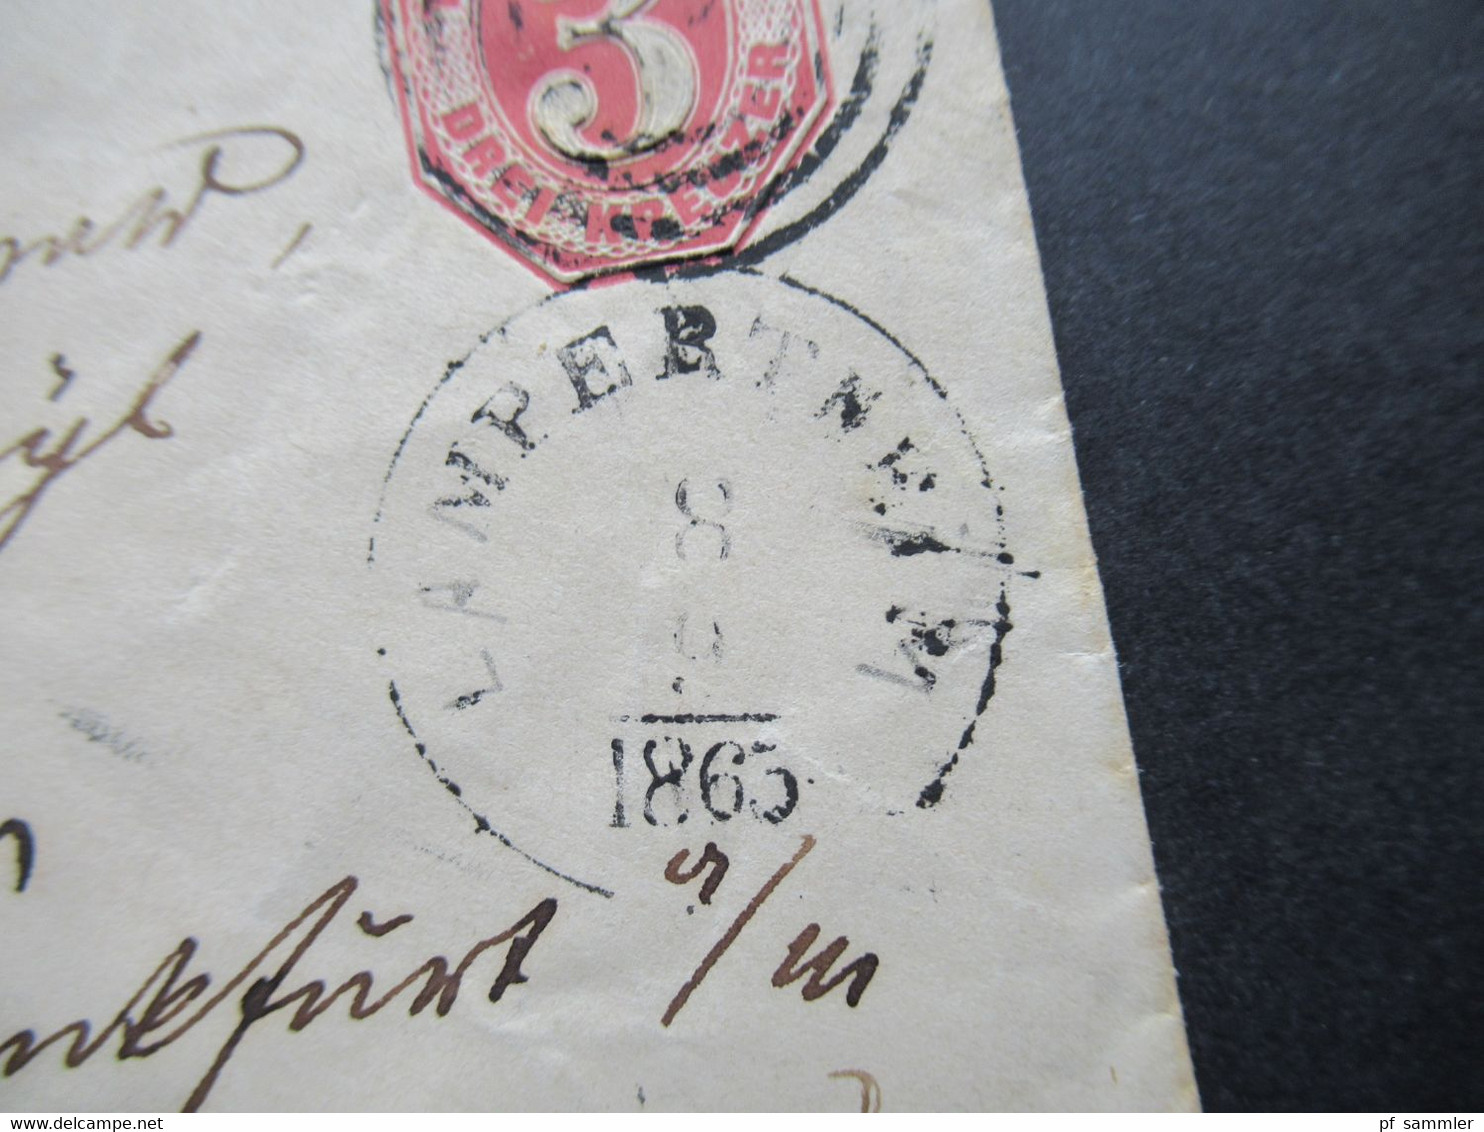 AD Thurn Und Taxis GA Umschlag Nummernstempel Und K1 Lampertheim 8.9.1865 Nach Frankfurt Am Main Franco - Briefe U. Dokumente